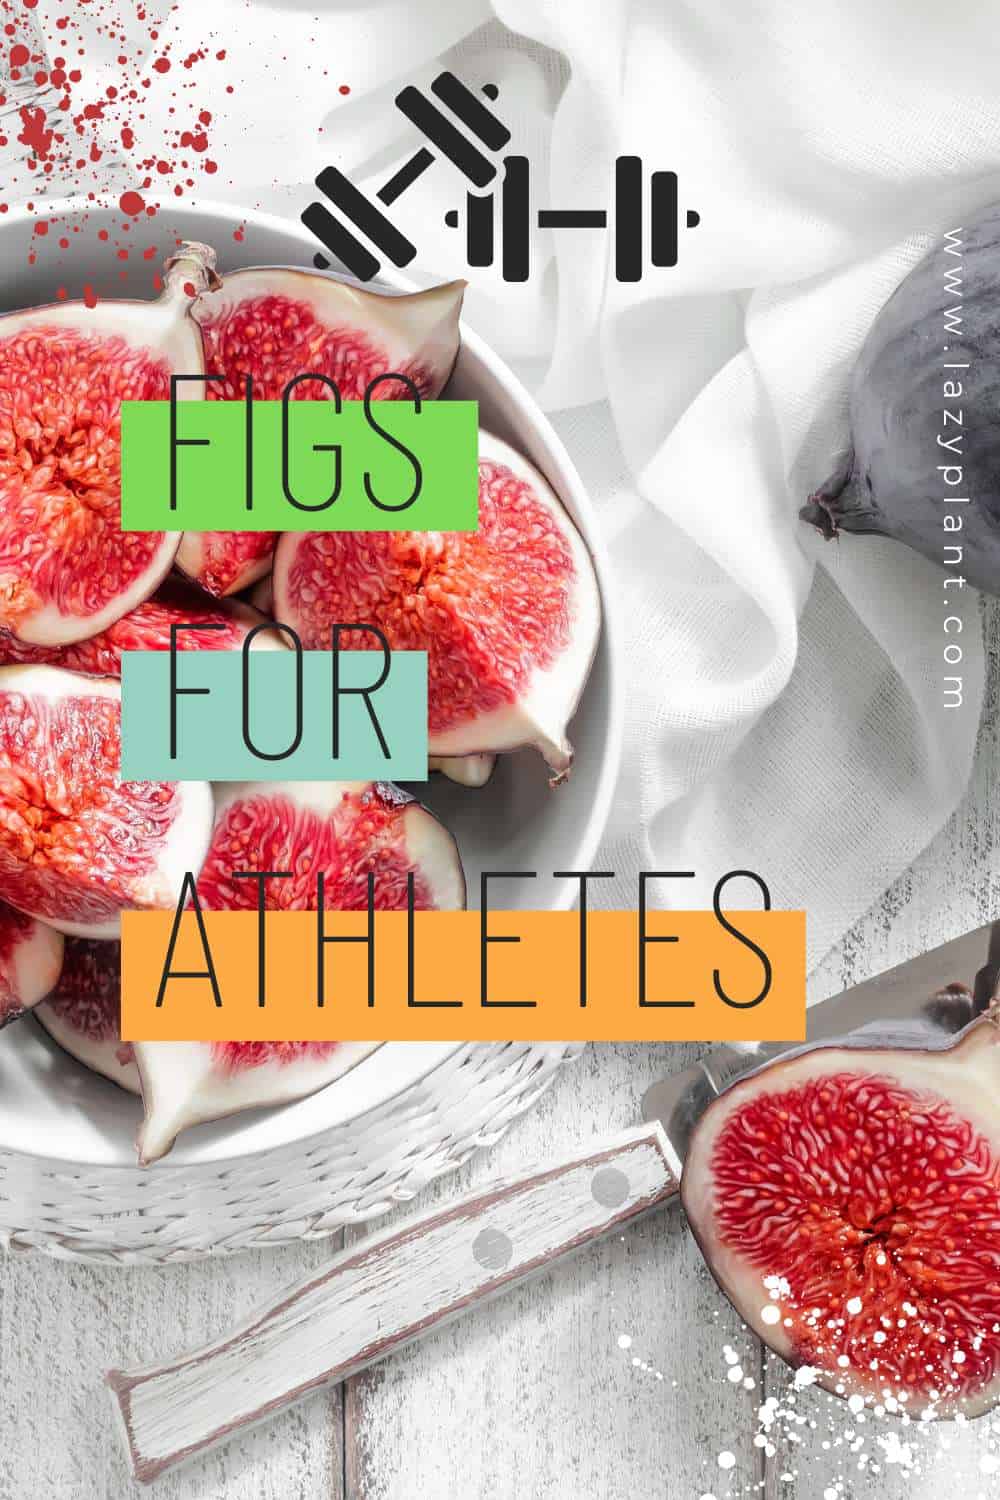 Figs: the secret superfood of elite athletes!